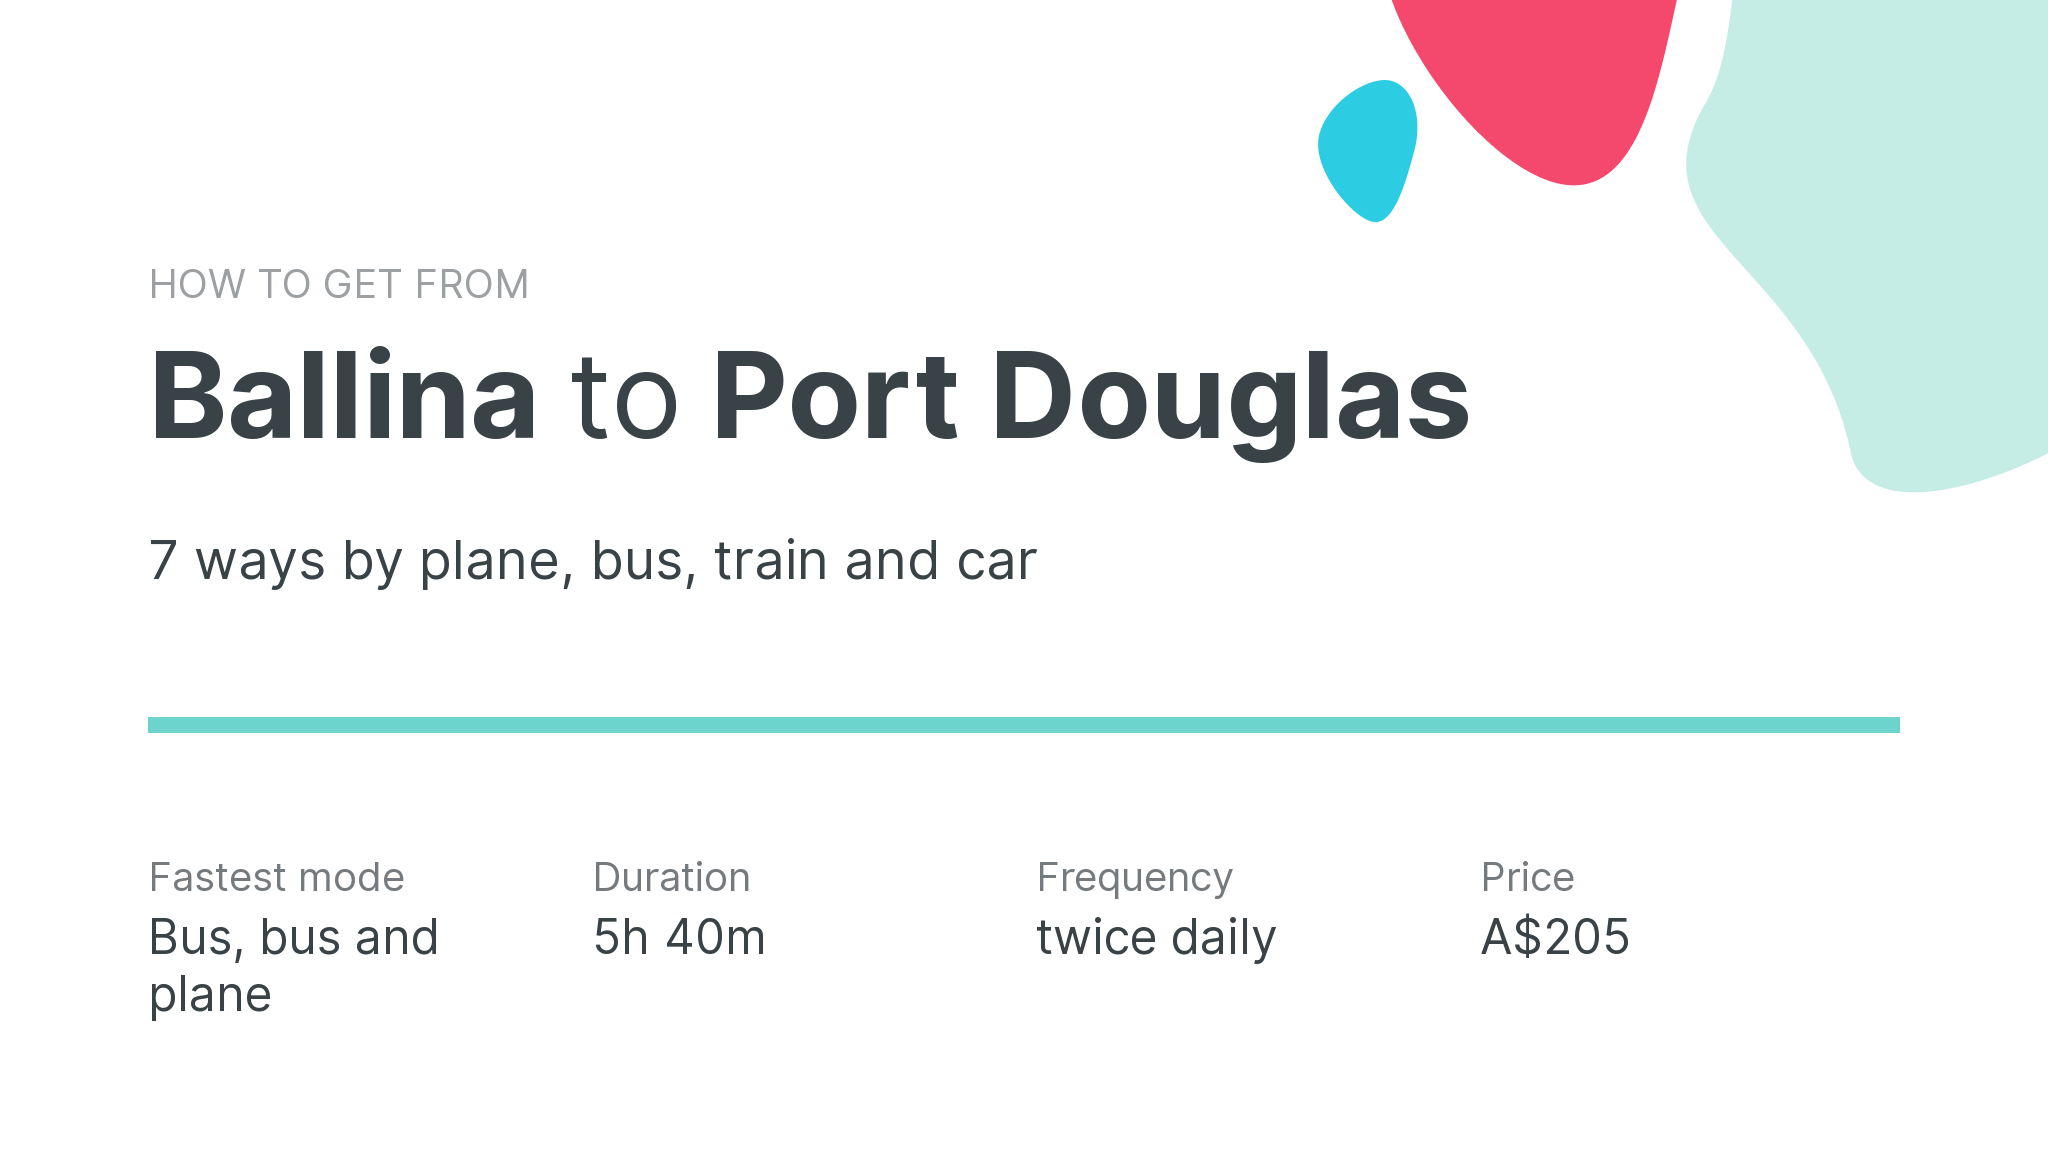 How do I get from Ballina to Port Douglas